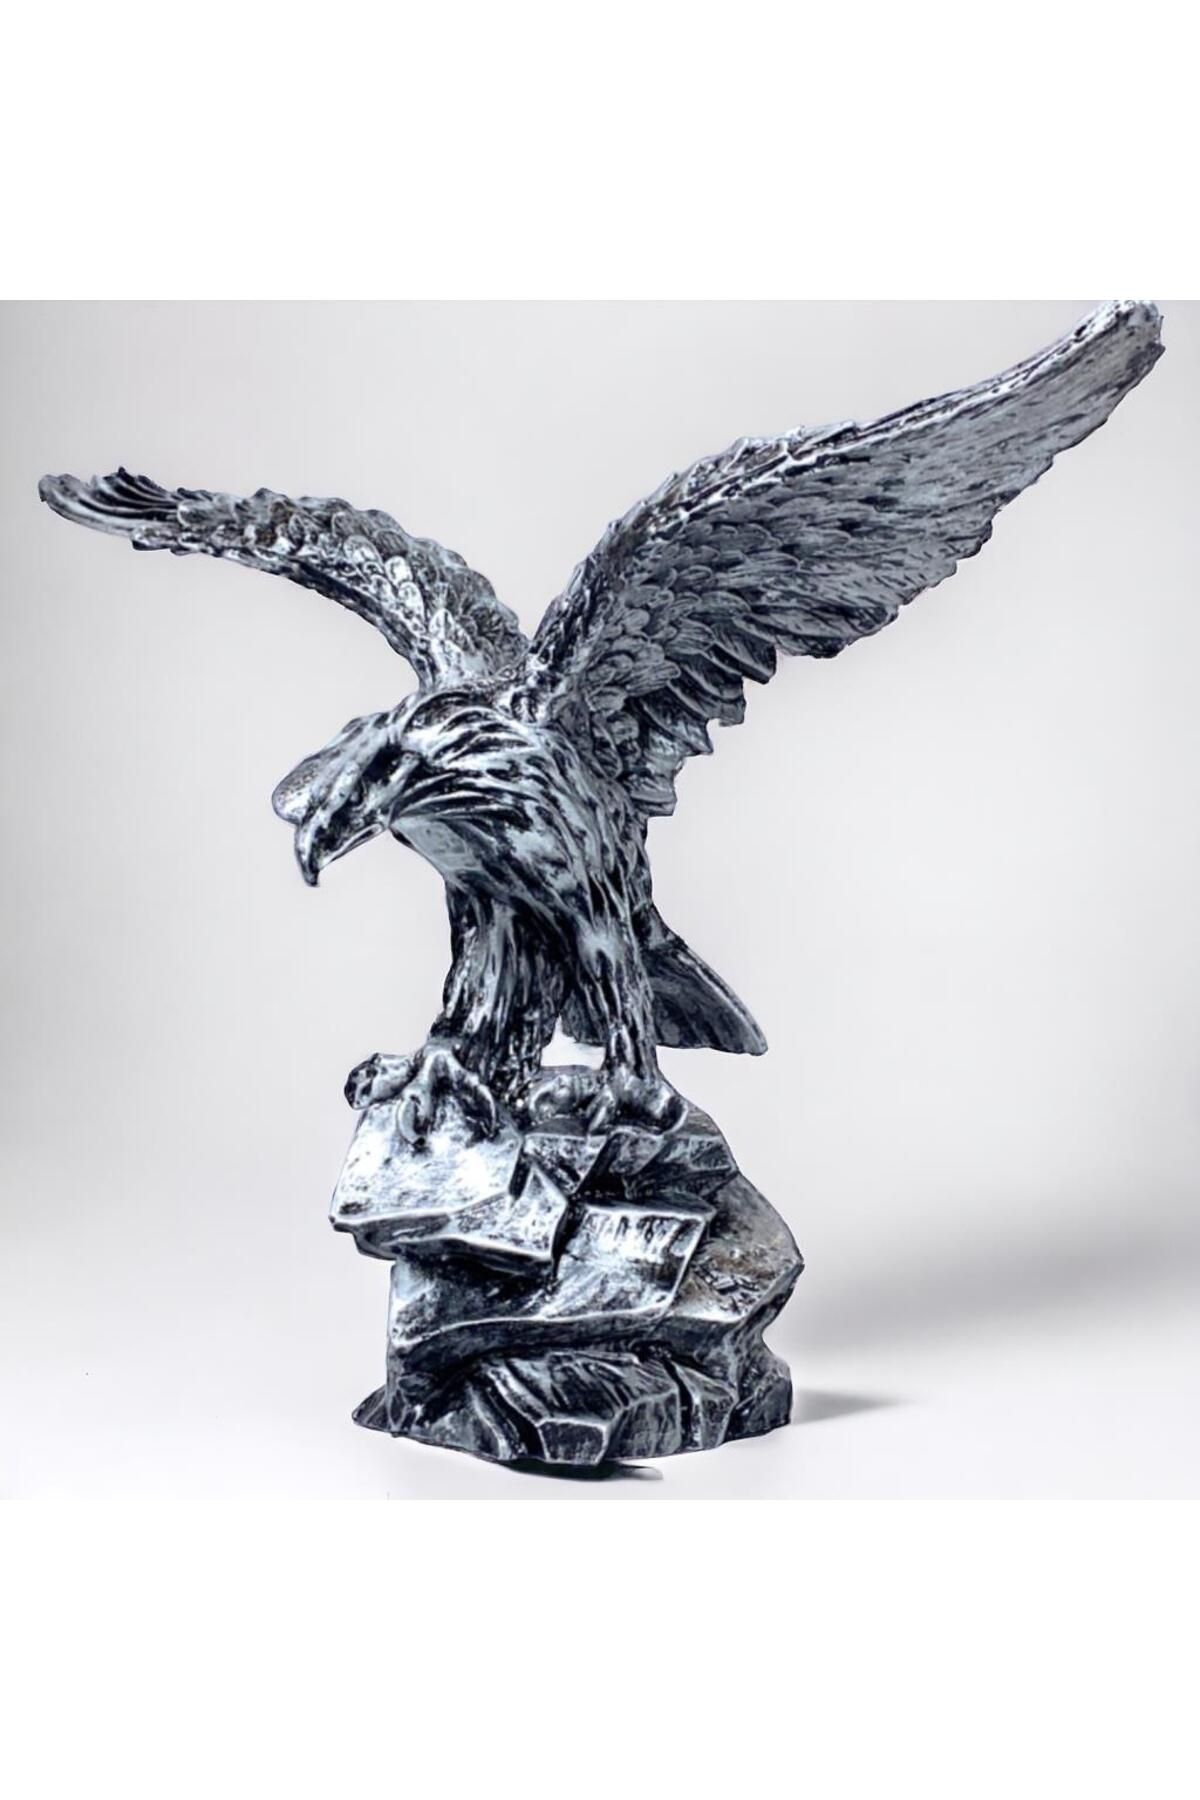 MEGA KANYON Gümüş Tasarım Büyük Boy Kartal Heykeli - El Yapımı Kartal Biblosu